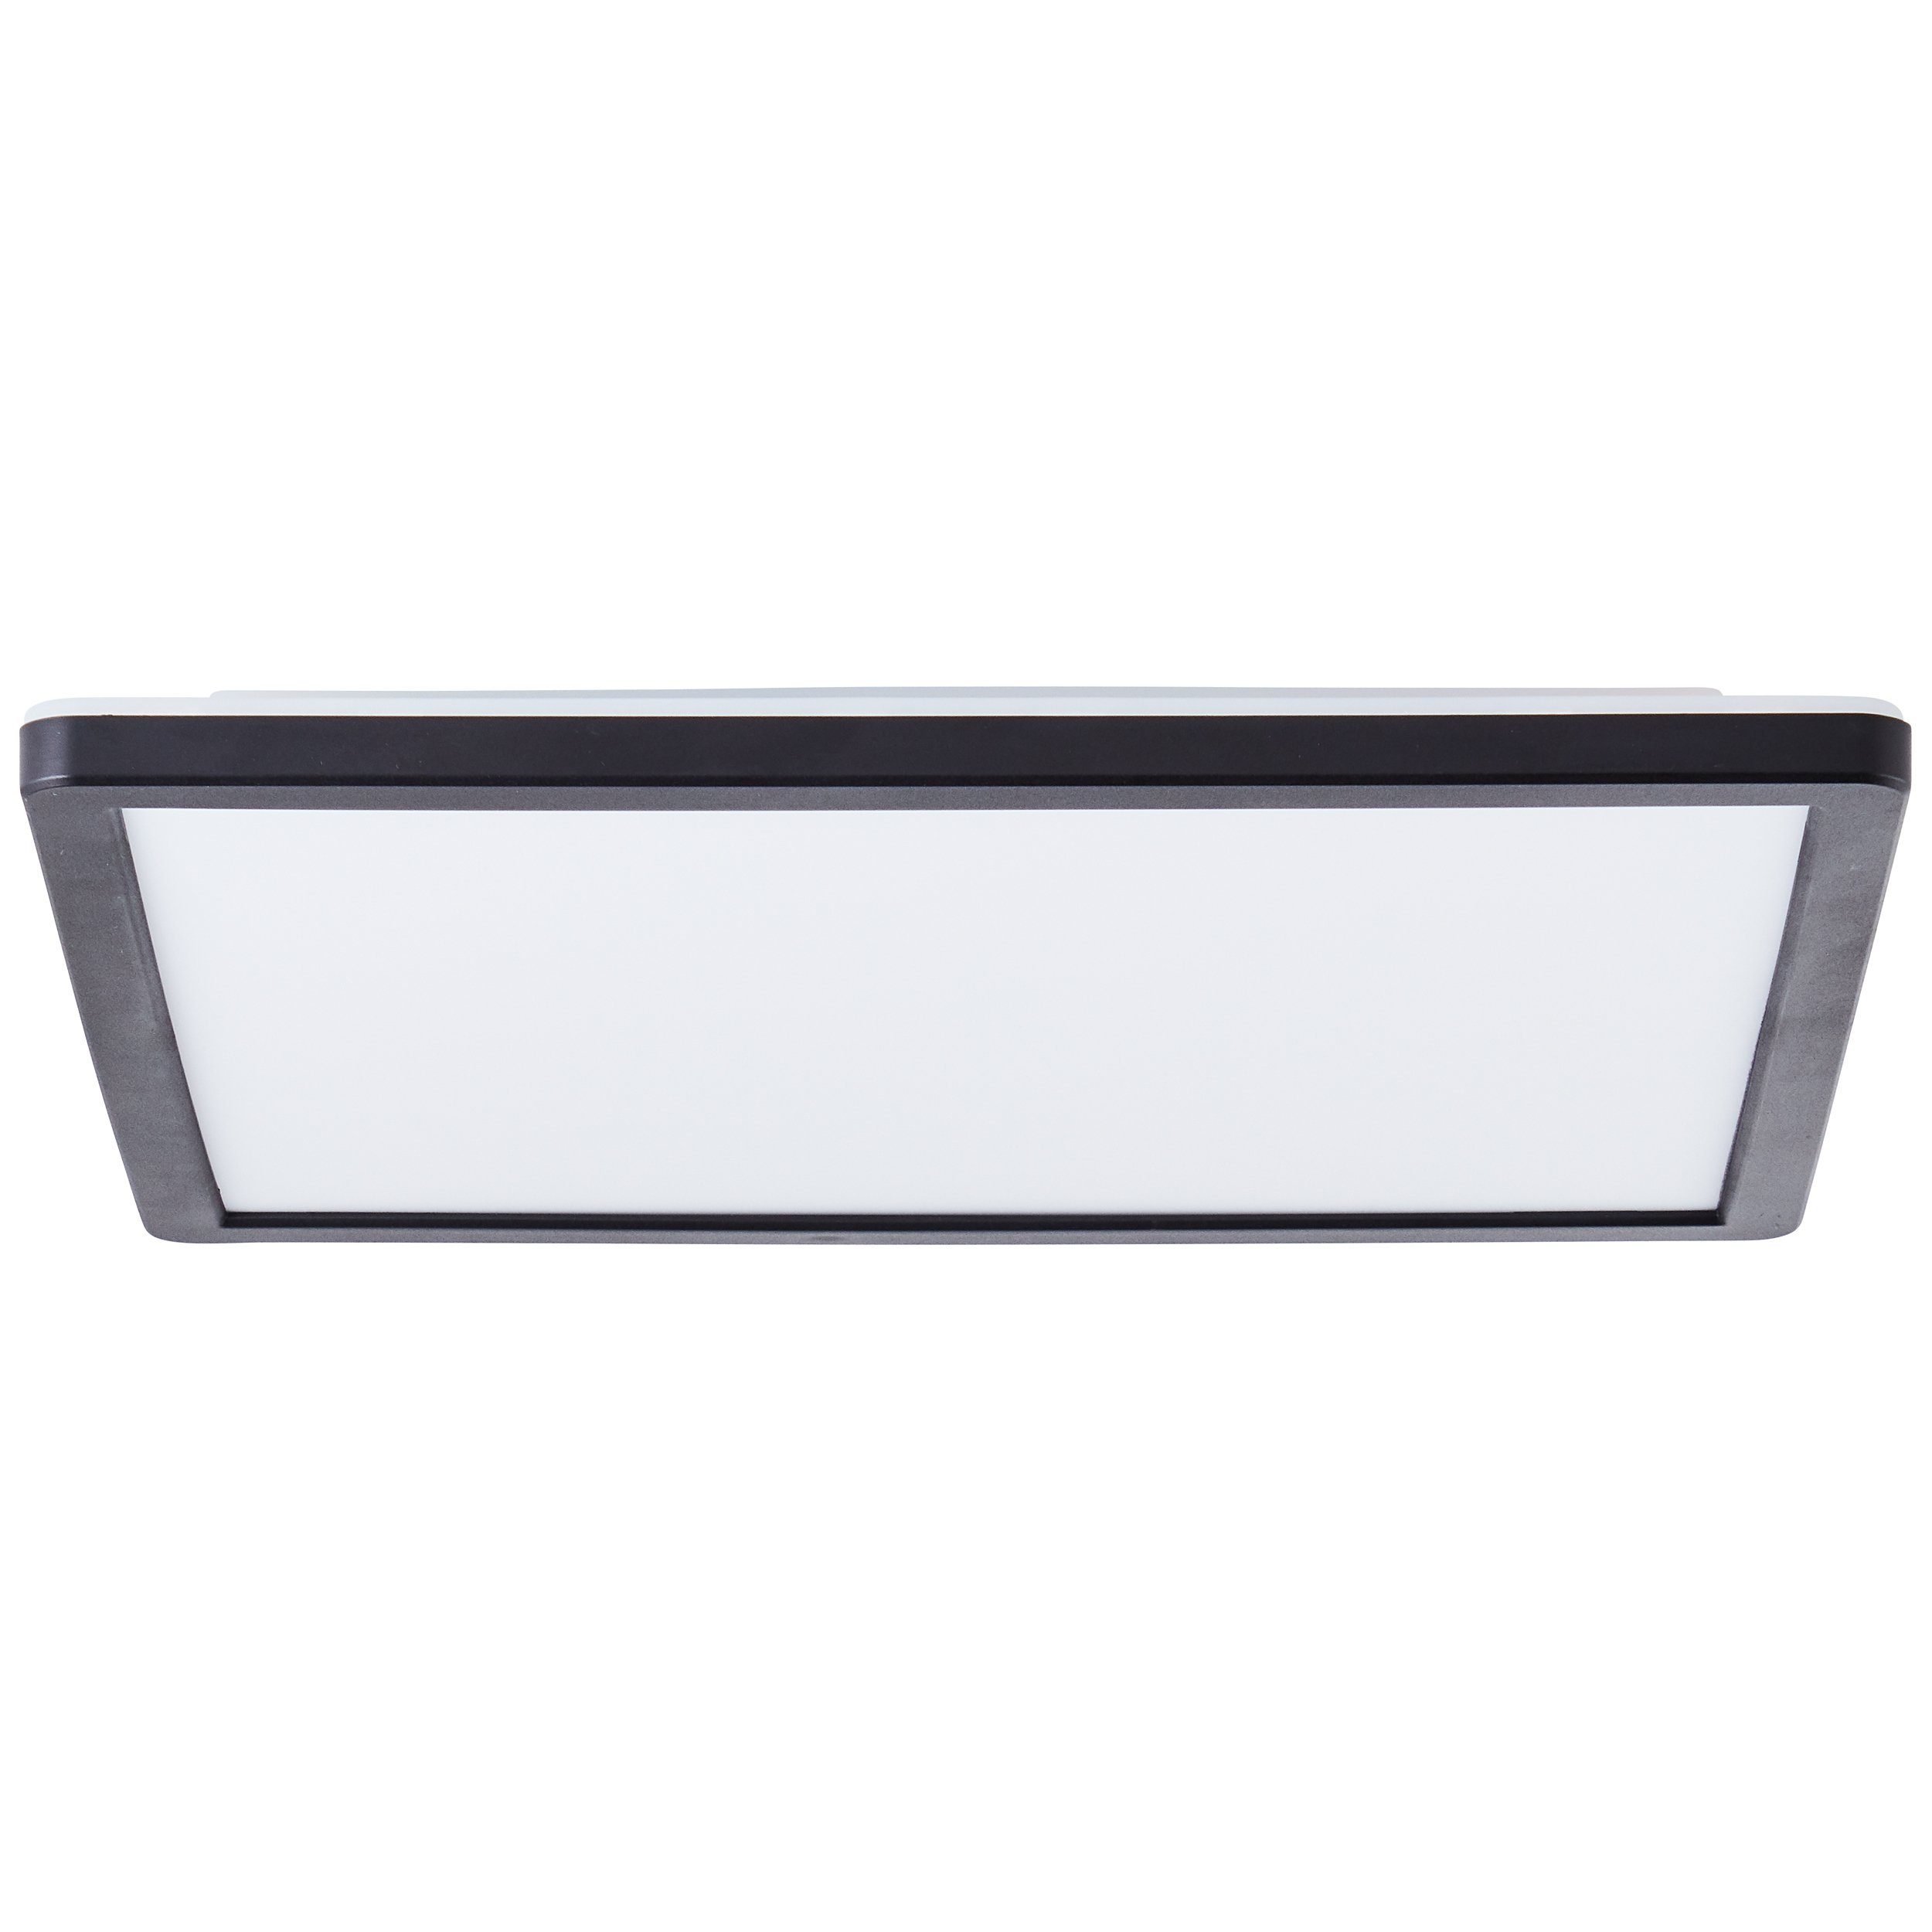 30x30cm Saltery Kunststoff LED weiß/schwarz, Deckenaufbau-Paneel Brilliant Aufbauleuchte weiß/schwarz 30x30cm LED Saltery Deckenaufbau-Paneel Fernbe